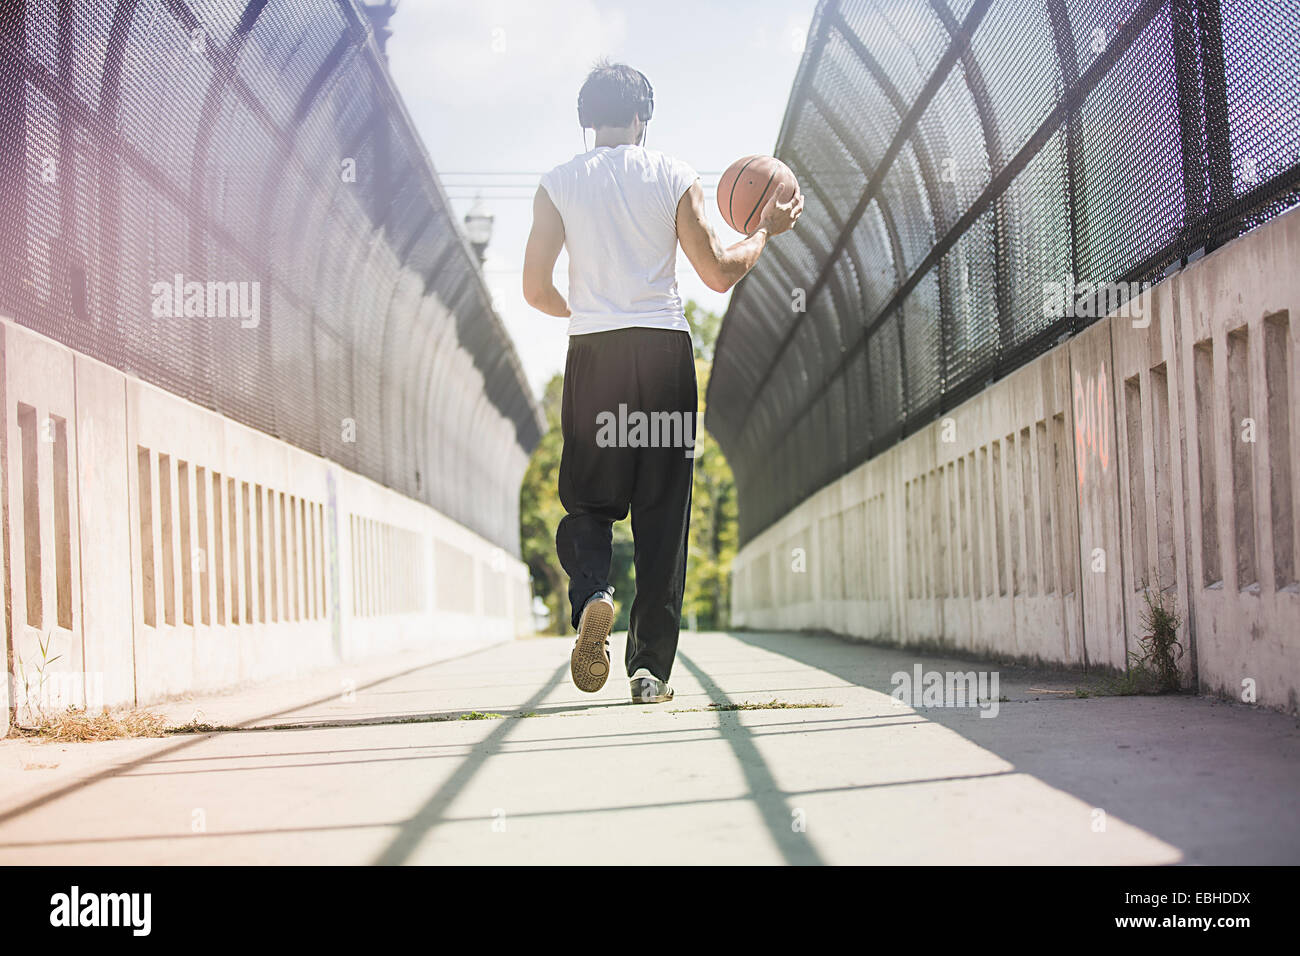 Vista trasera del joven jugador de baloncesto masculino caminando a lo largo de la pasarela llevando la bola Foto de stock